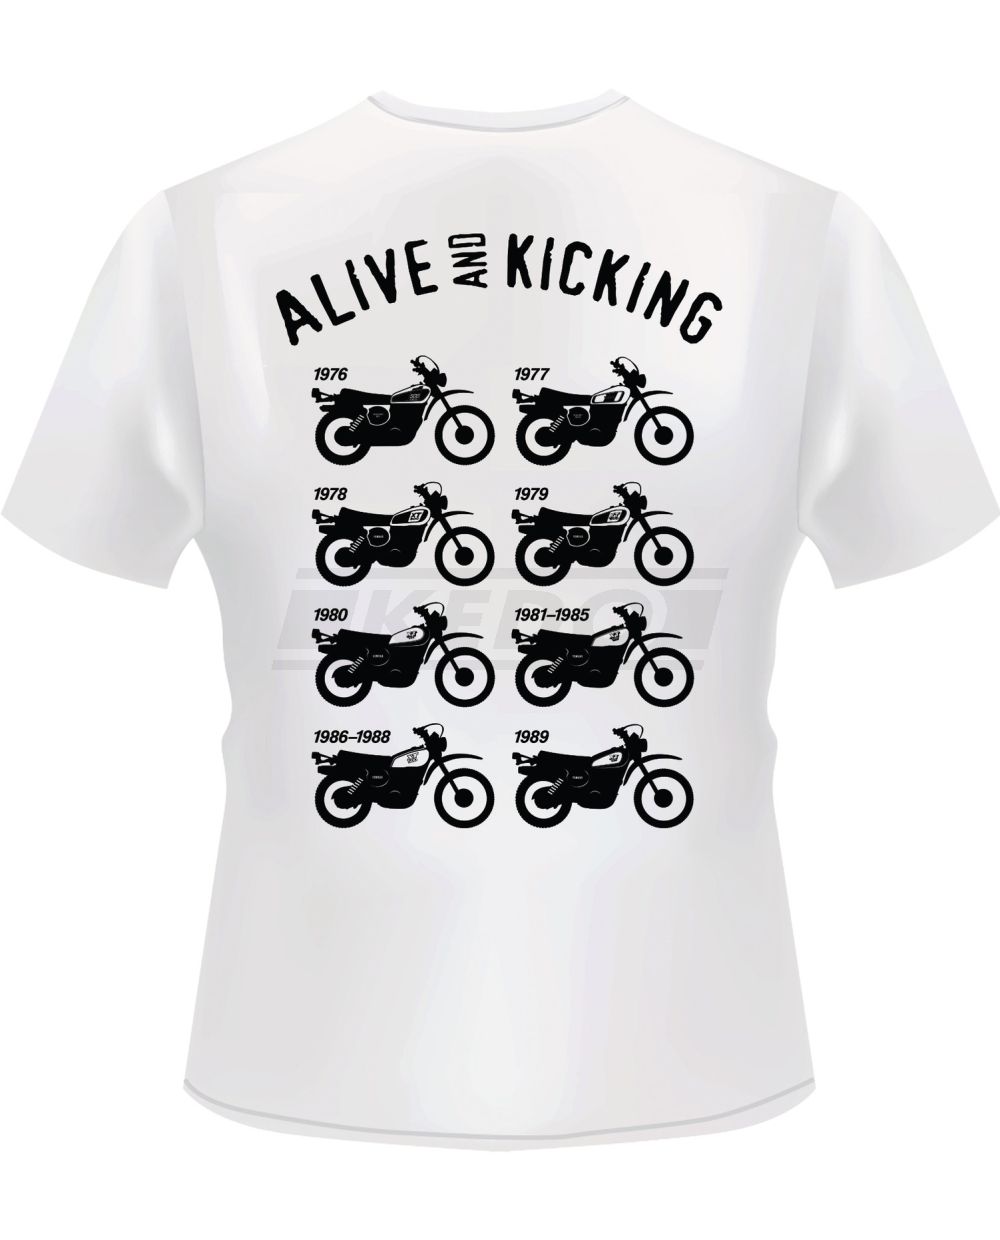 T-Shirt, Motiv: 'XT500 Modellübersicht', Farbe: weiß, Aufdruck: hinten  schwarz, vorn rot/schwarz, Größe: L, 160g Bio-Baumwolle, 100% Baumwolle